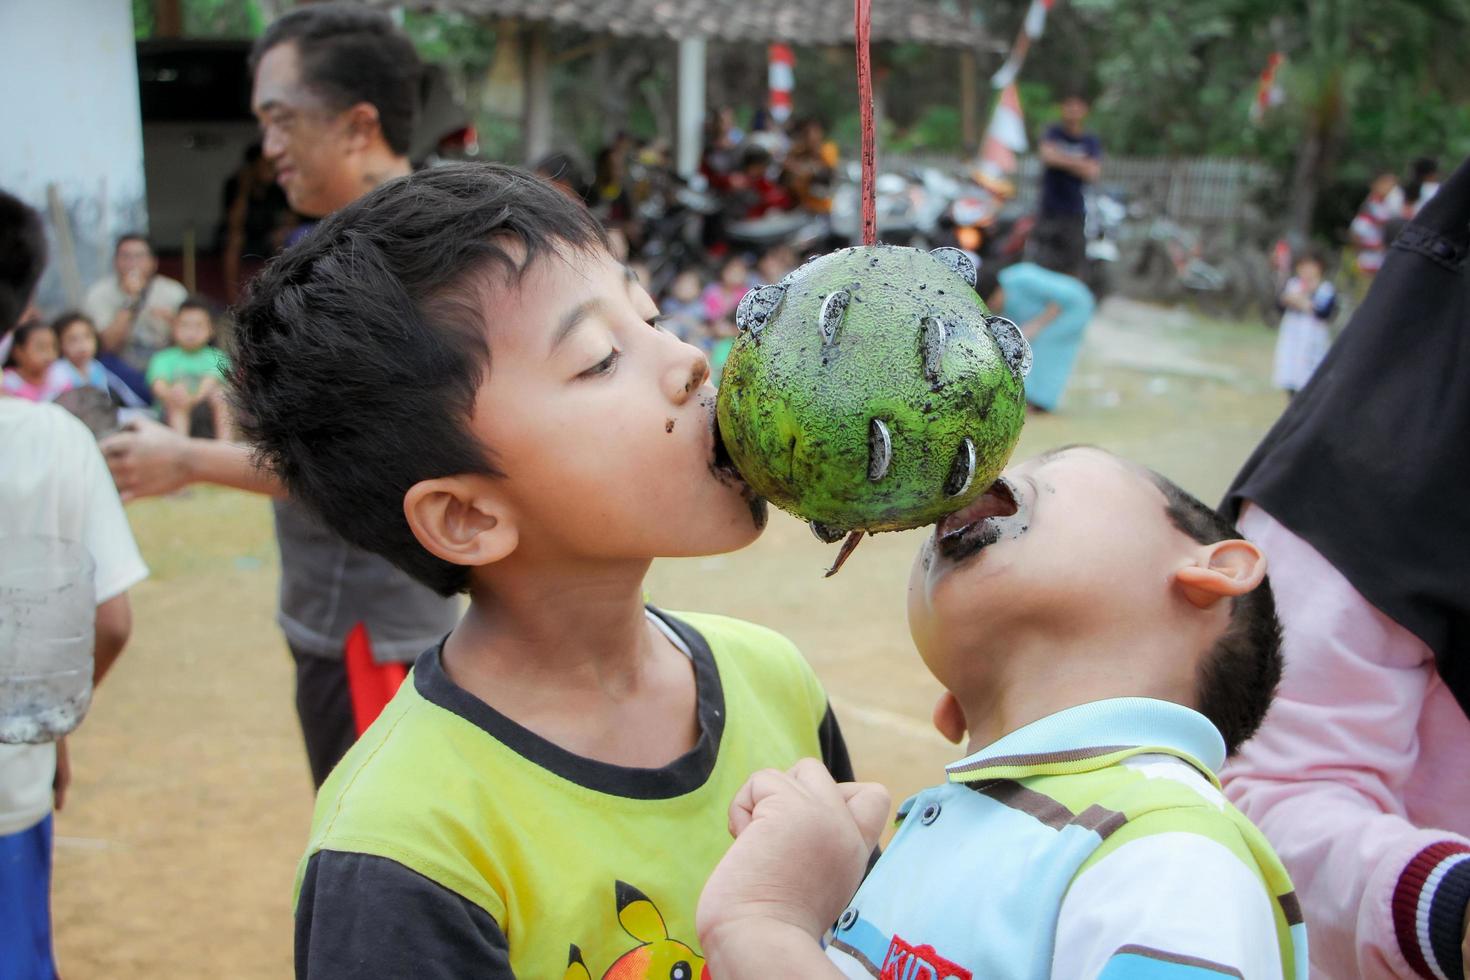 magetan, indonésie. 17 août 2022. les enfants indonésiens sont heureux de célébrer le jour de l'indépendance de l'indonésie en participant à un concours. photo